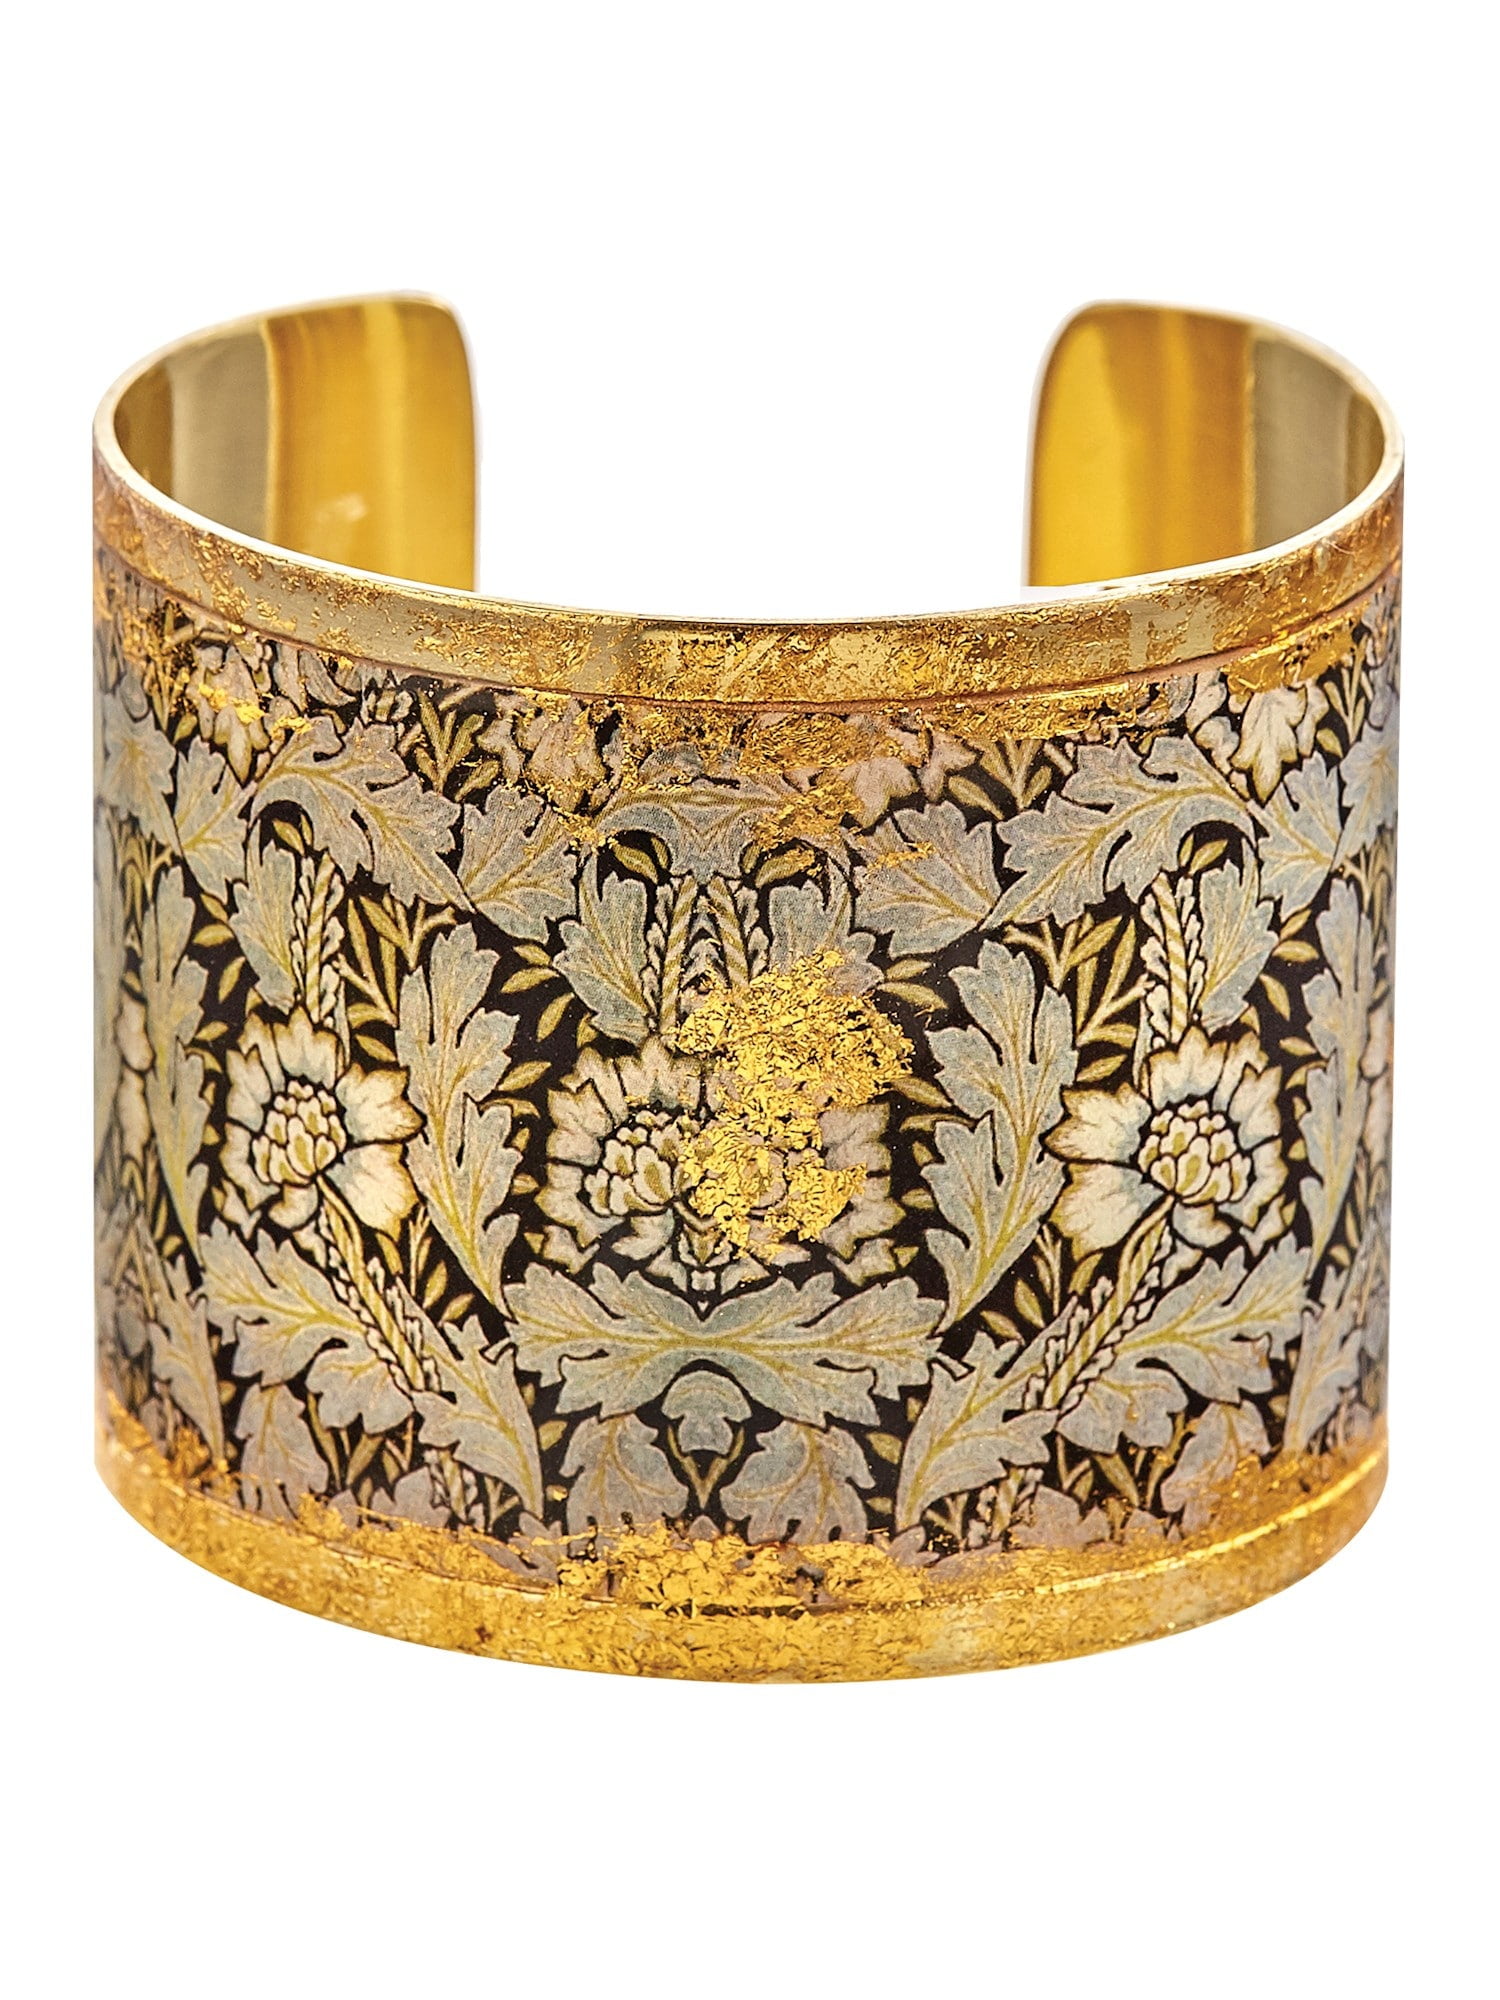 Brass Antique Finish Wire Cuff Bracelet